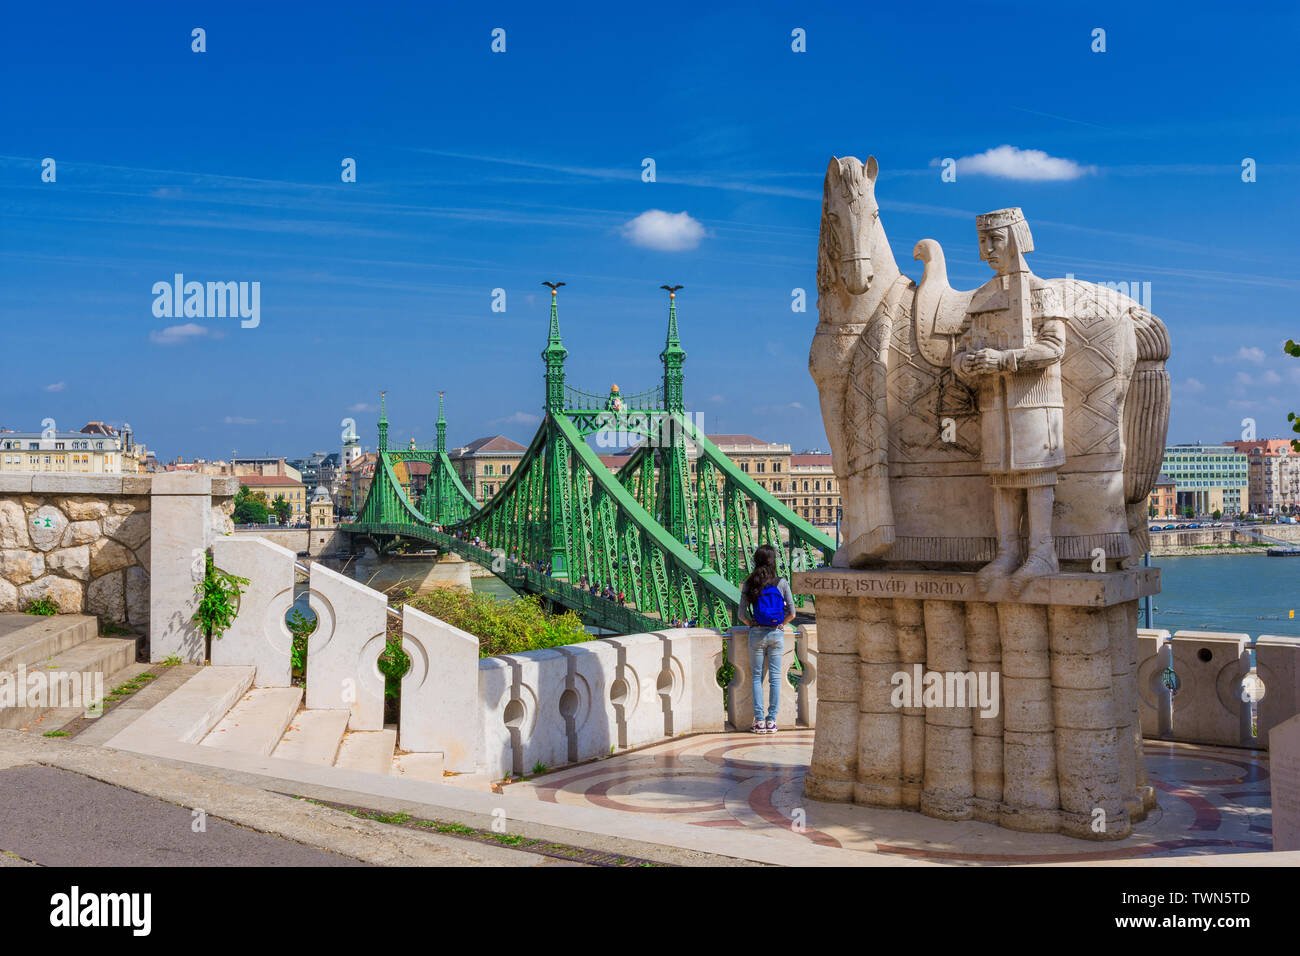 Vue de pont de la liberté, Danube et le centre-ville de Budapest à partir de la colline Gellert, terrasse avec St Stephen roi de Hongrie monument Banque D'Images